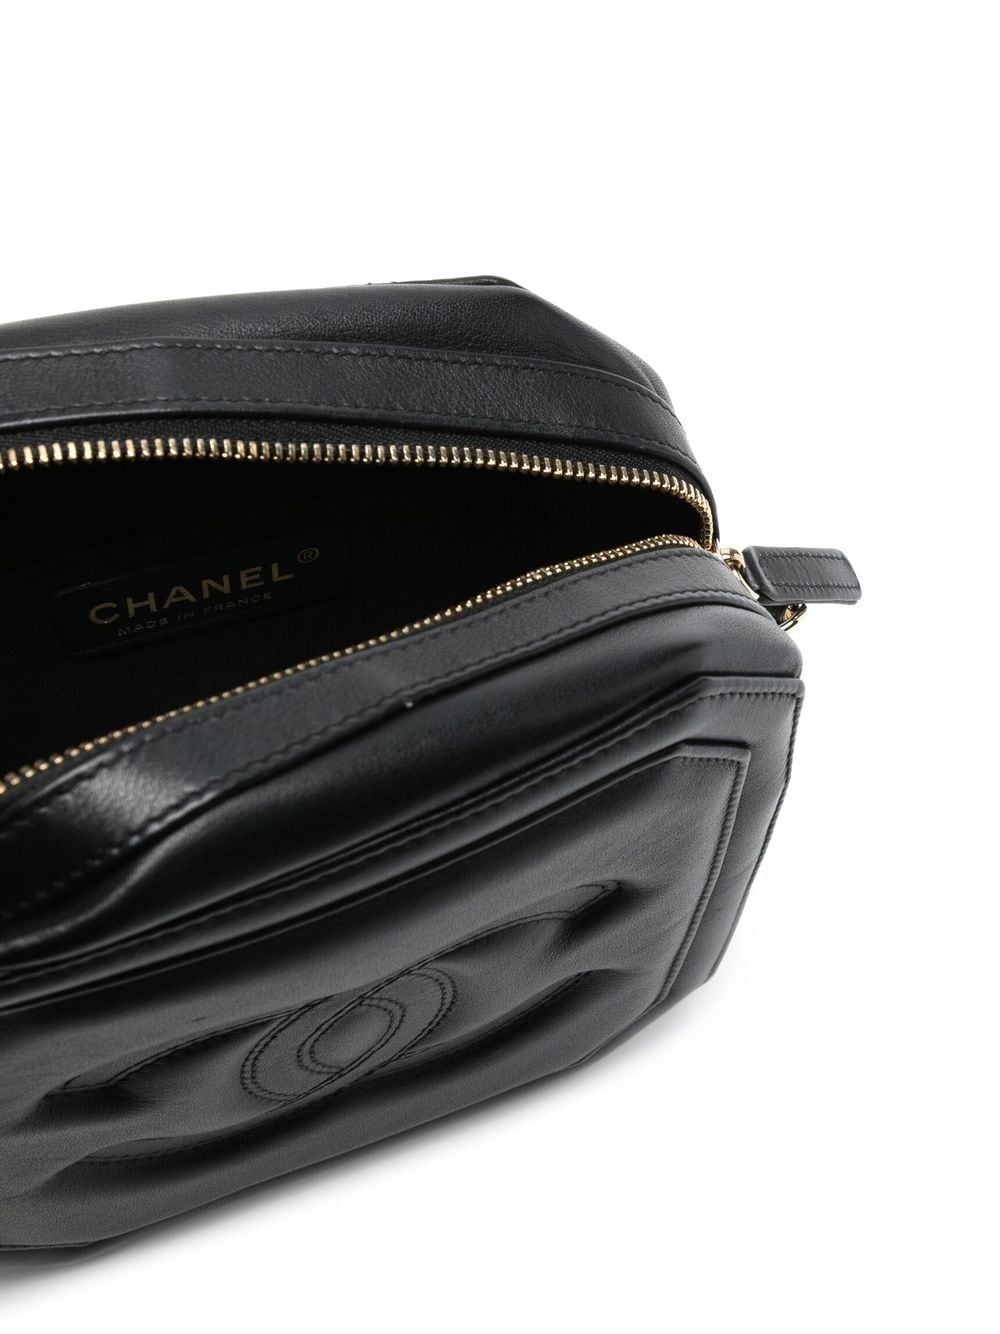 Chanel Vintage Camera Shoulder Bag Review  YouTube